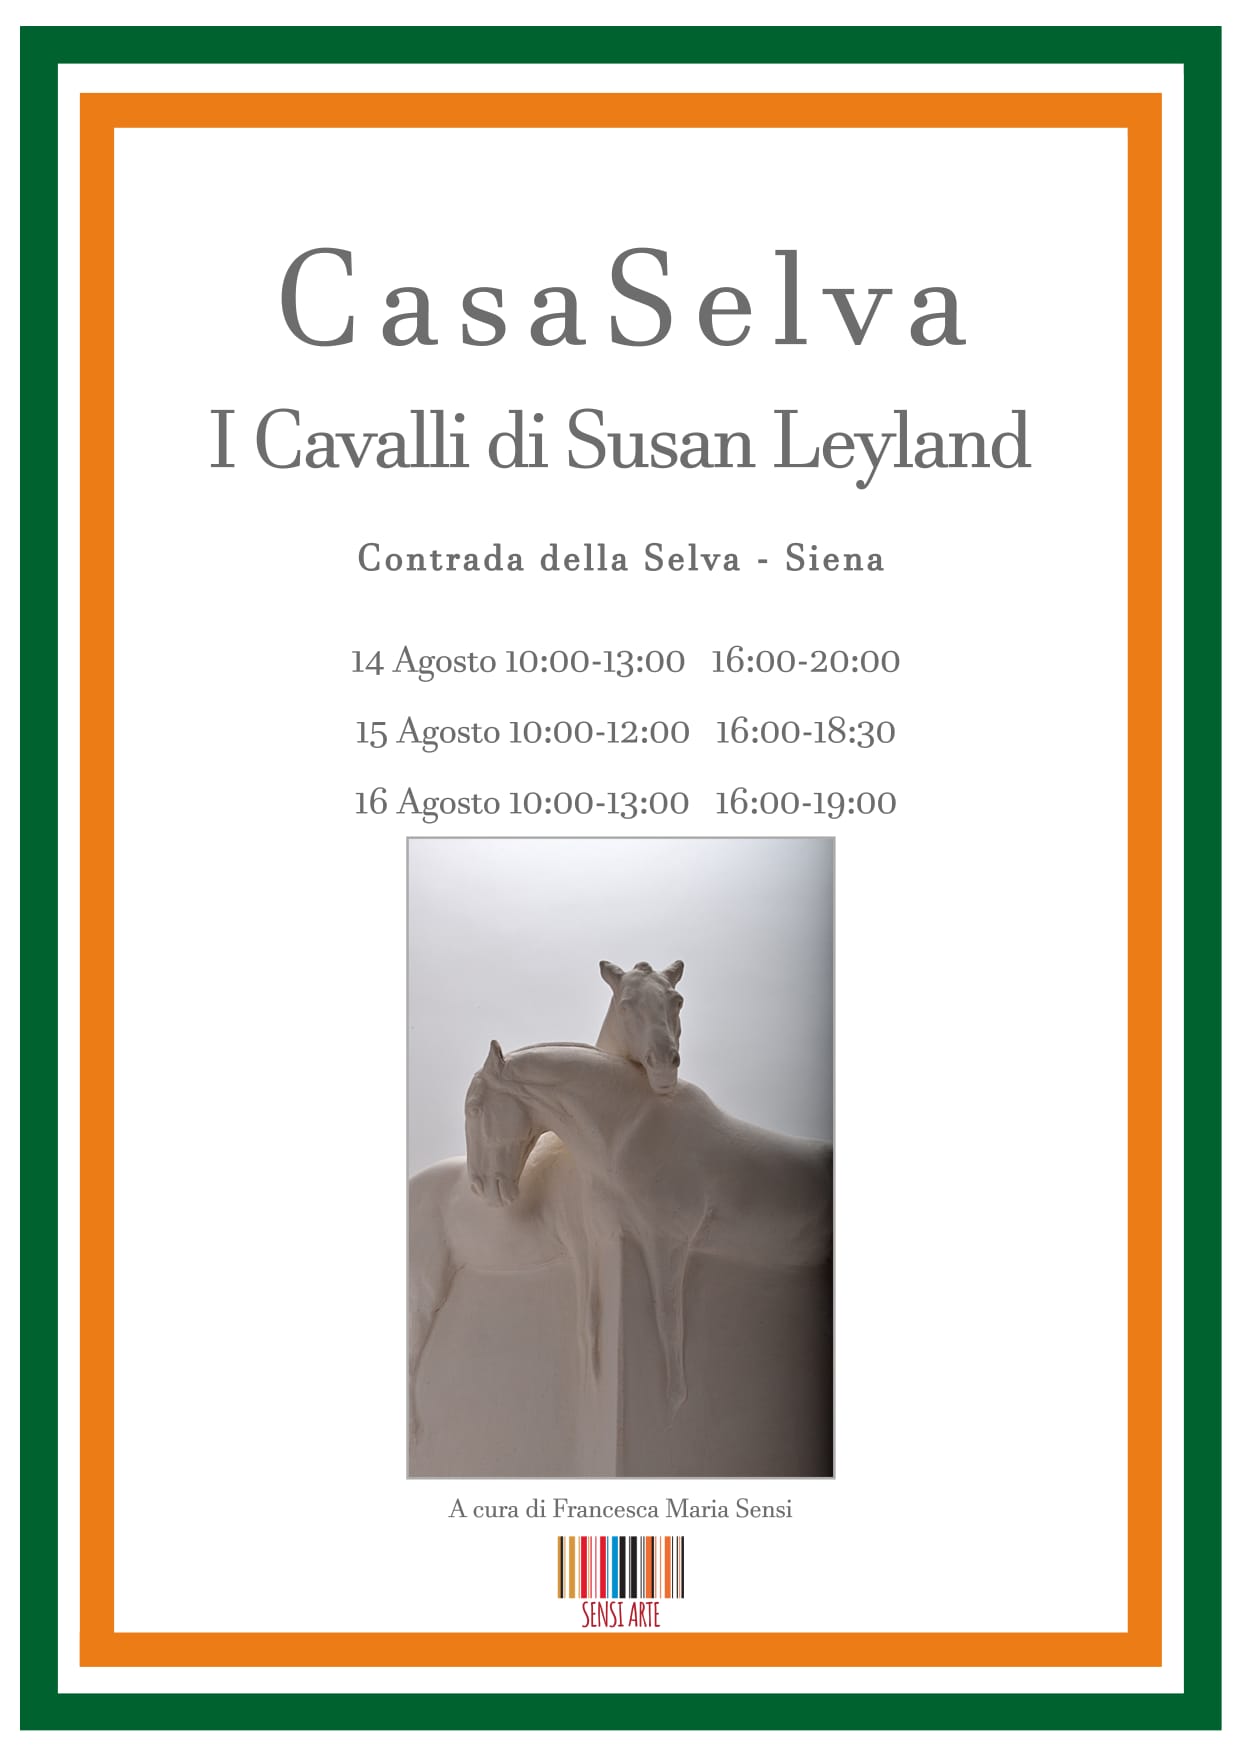 Selva: oggi al via la mostra di scultura con le opere di Susan Leyland